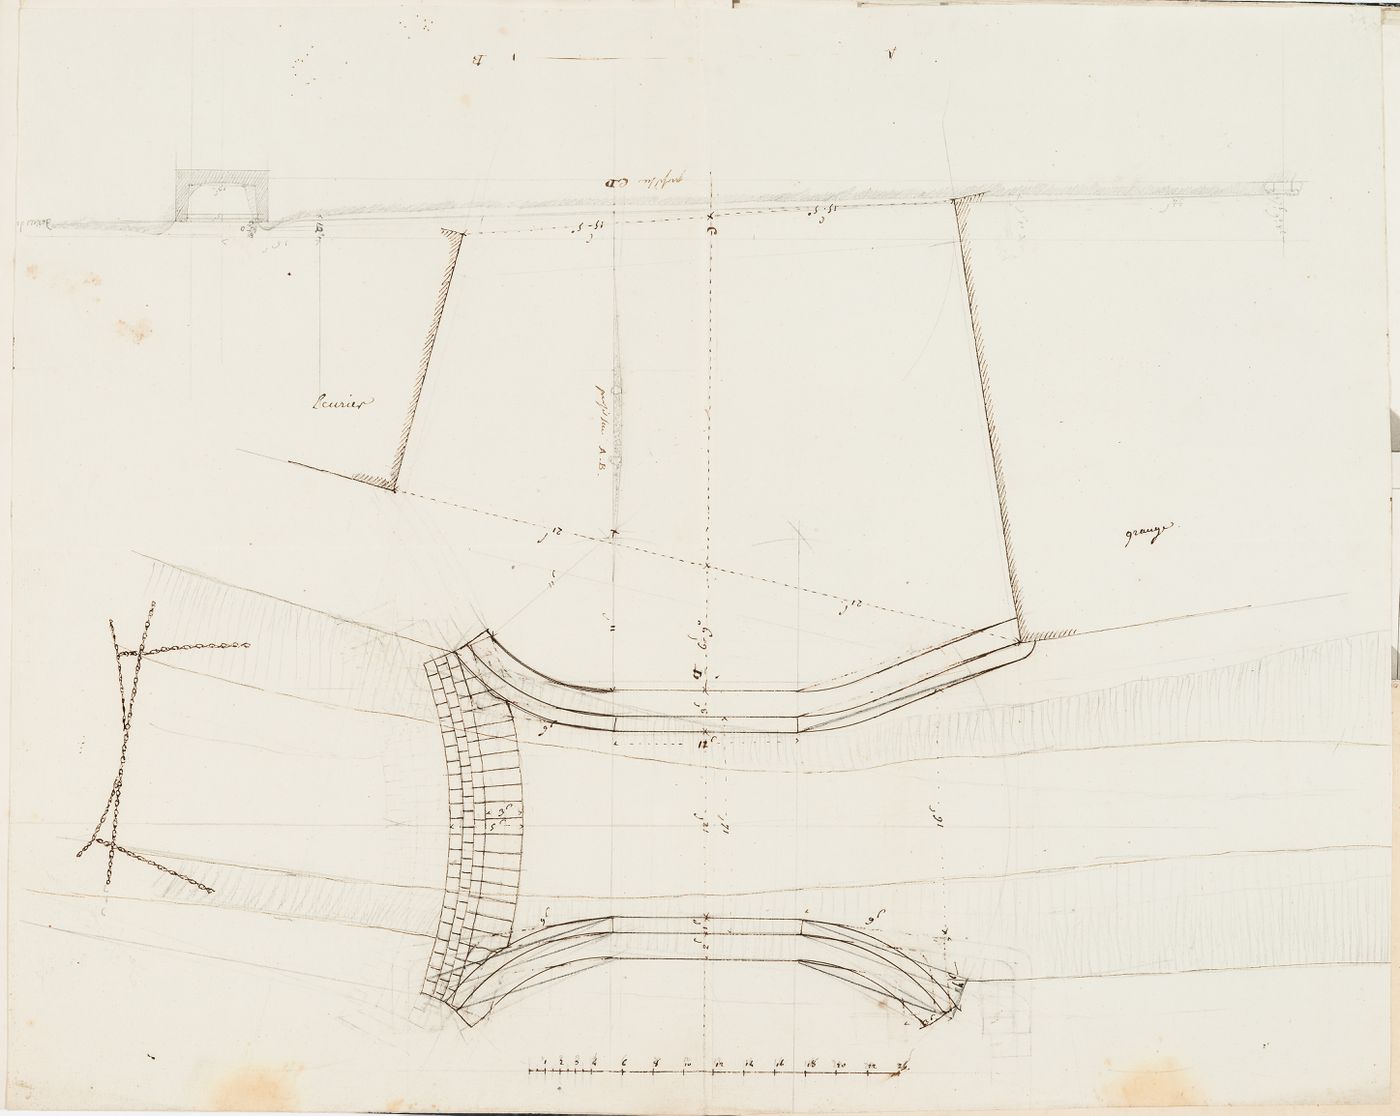 Plan and sections for a bridge over a ravine, Domaine de La Vallée